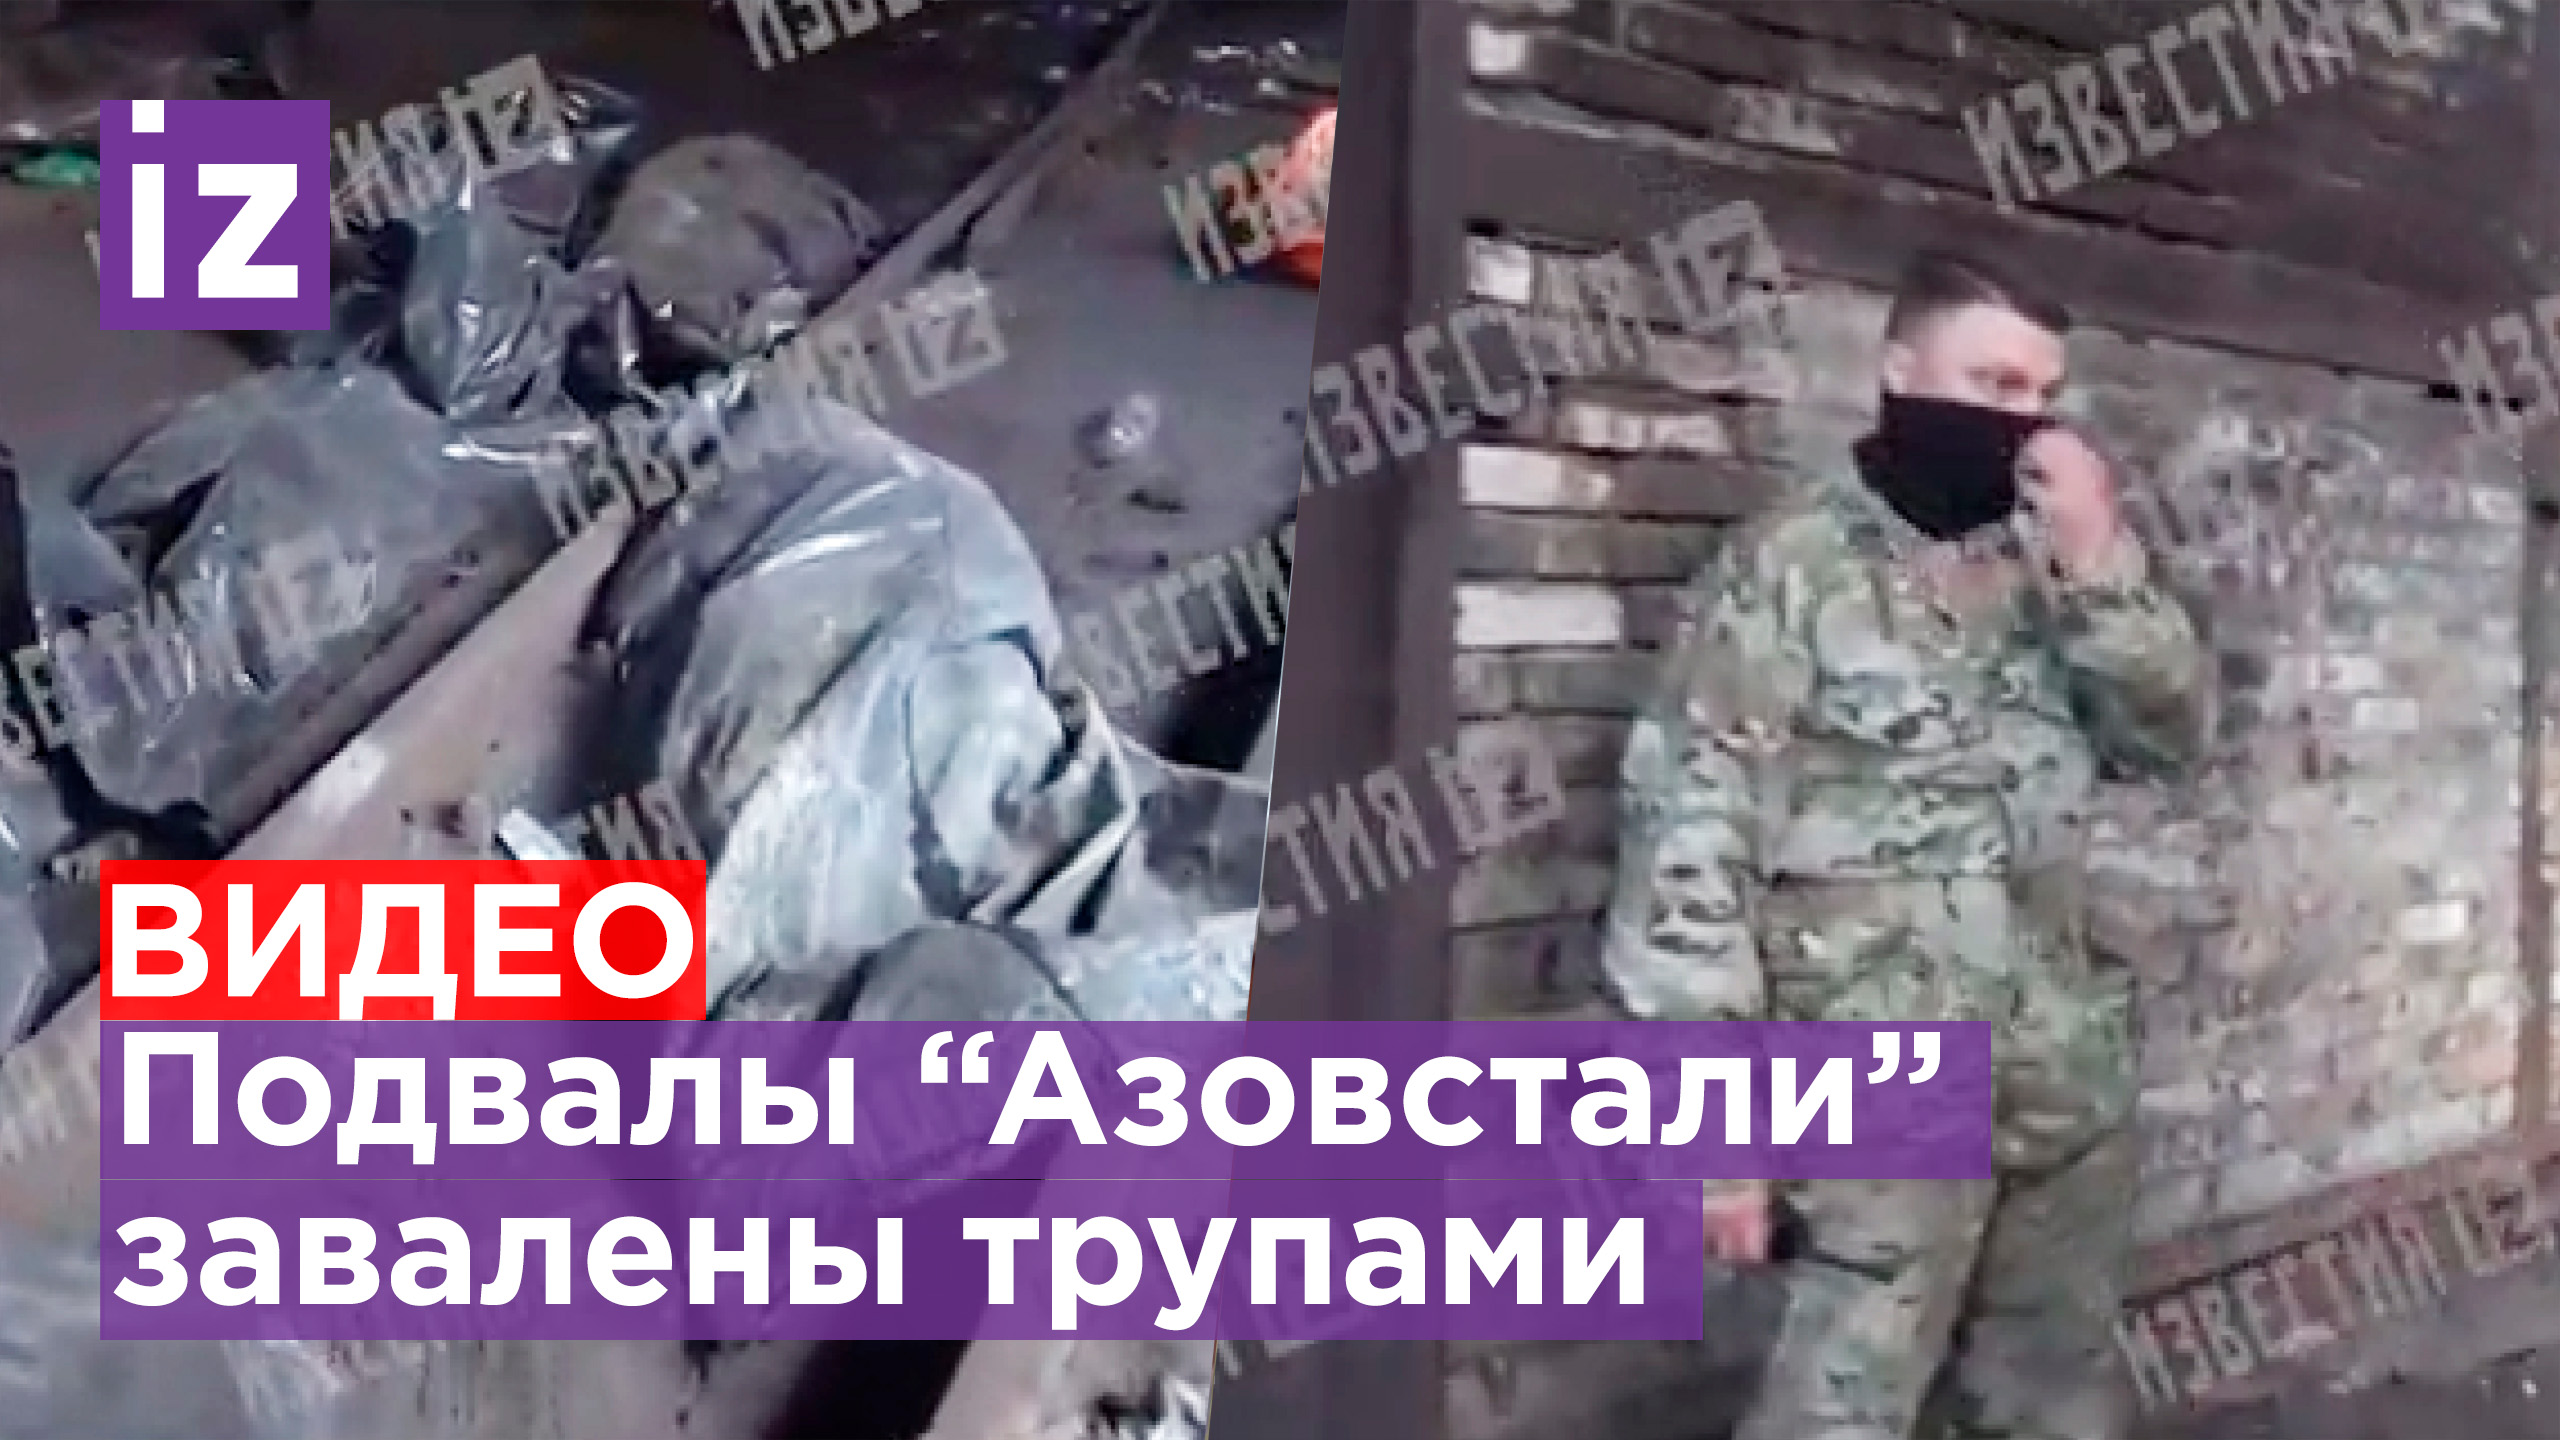 Жесткие видео с украины в телеграмме фото 60